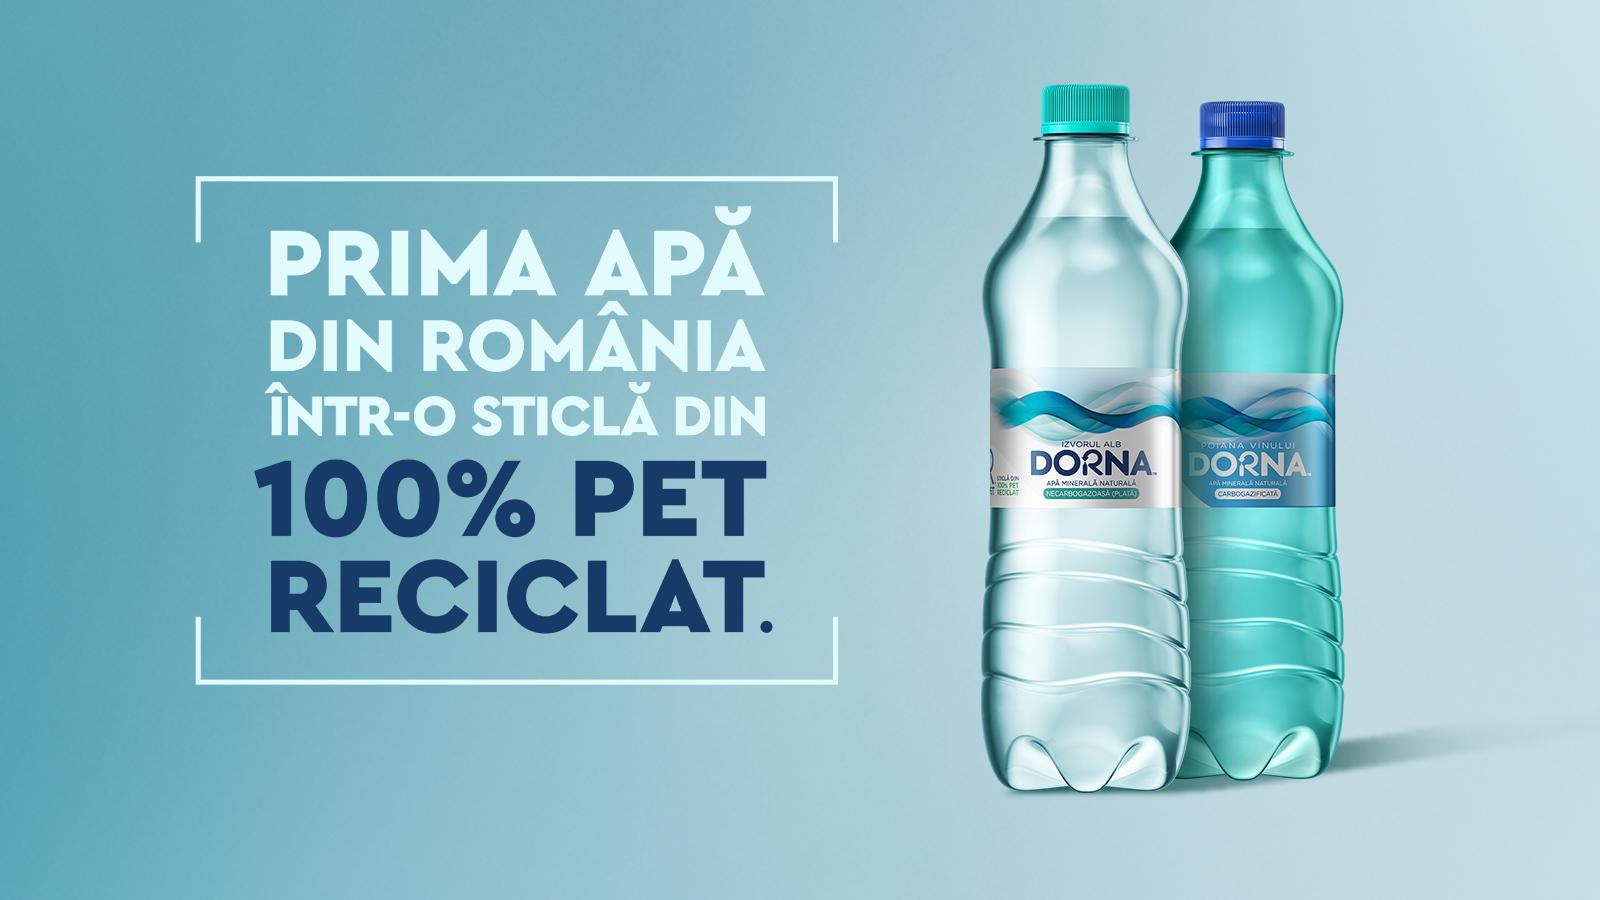 Sticle de apă plată și carbogazoasă Dorna. Textul subliniază că sticlele sunt 100% din PET reciclat.